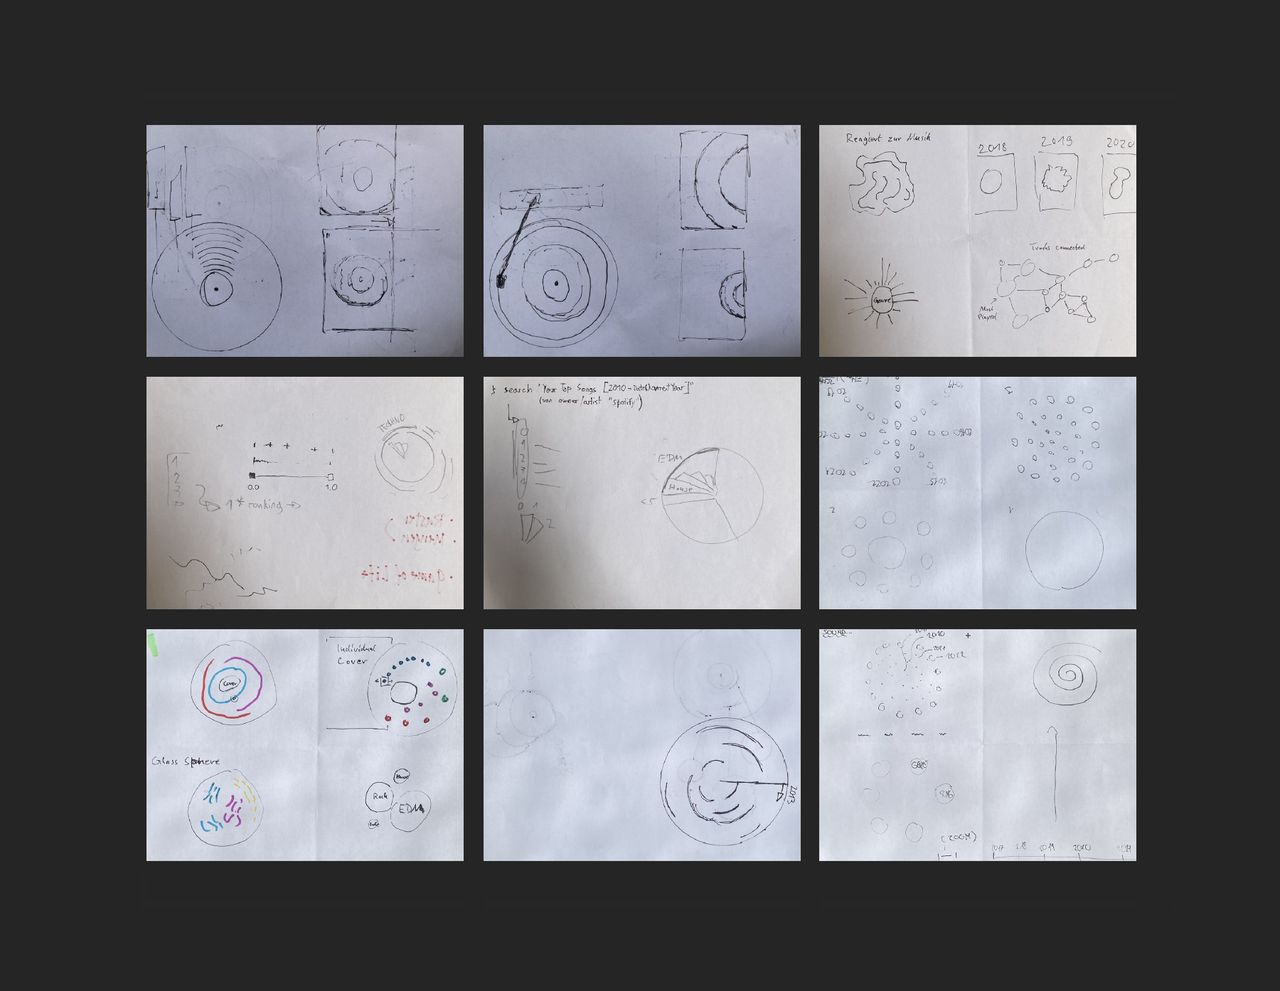 Verschiedene frühe Skizzen auf Papier. Es sind verschiedene Kombinationen, meist bestehend aus einer Zeitachse und ein oder mehreren Kreiselementen, zu sehen, die zum Teil an einer Schallplatte erinnern.